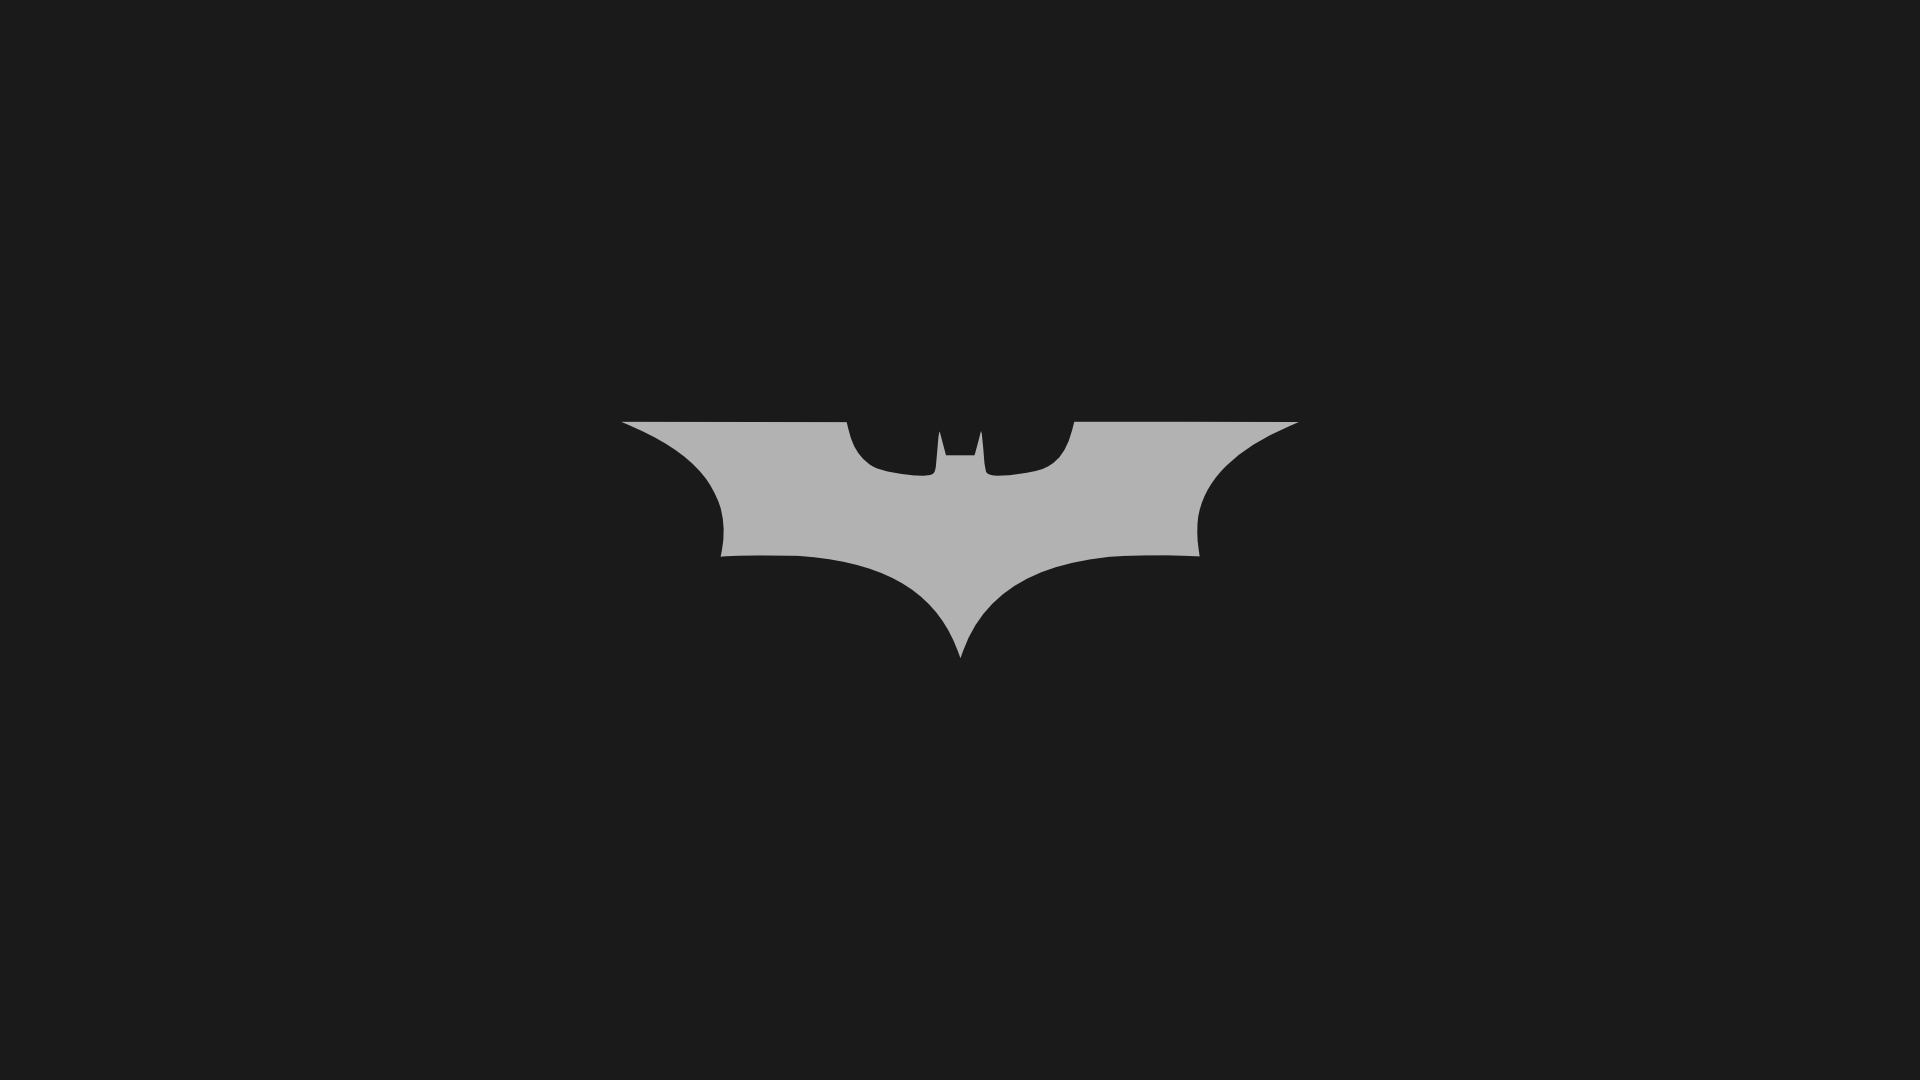  Batman Logo Iphone Wallpaper batman logo wallpaper Anglerzcom